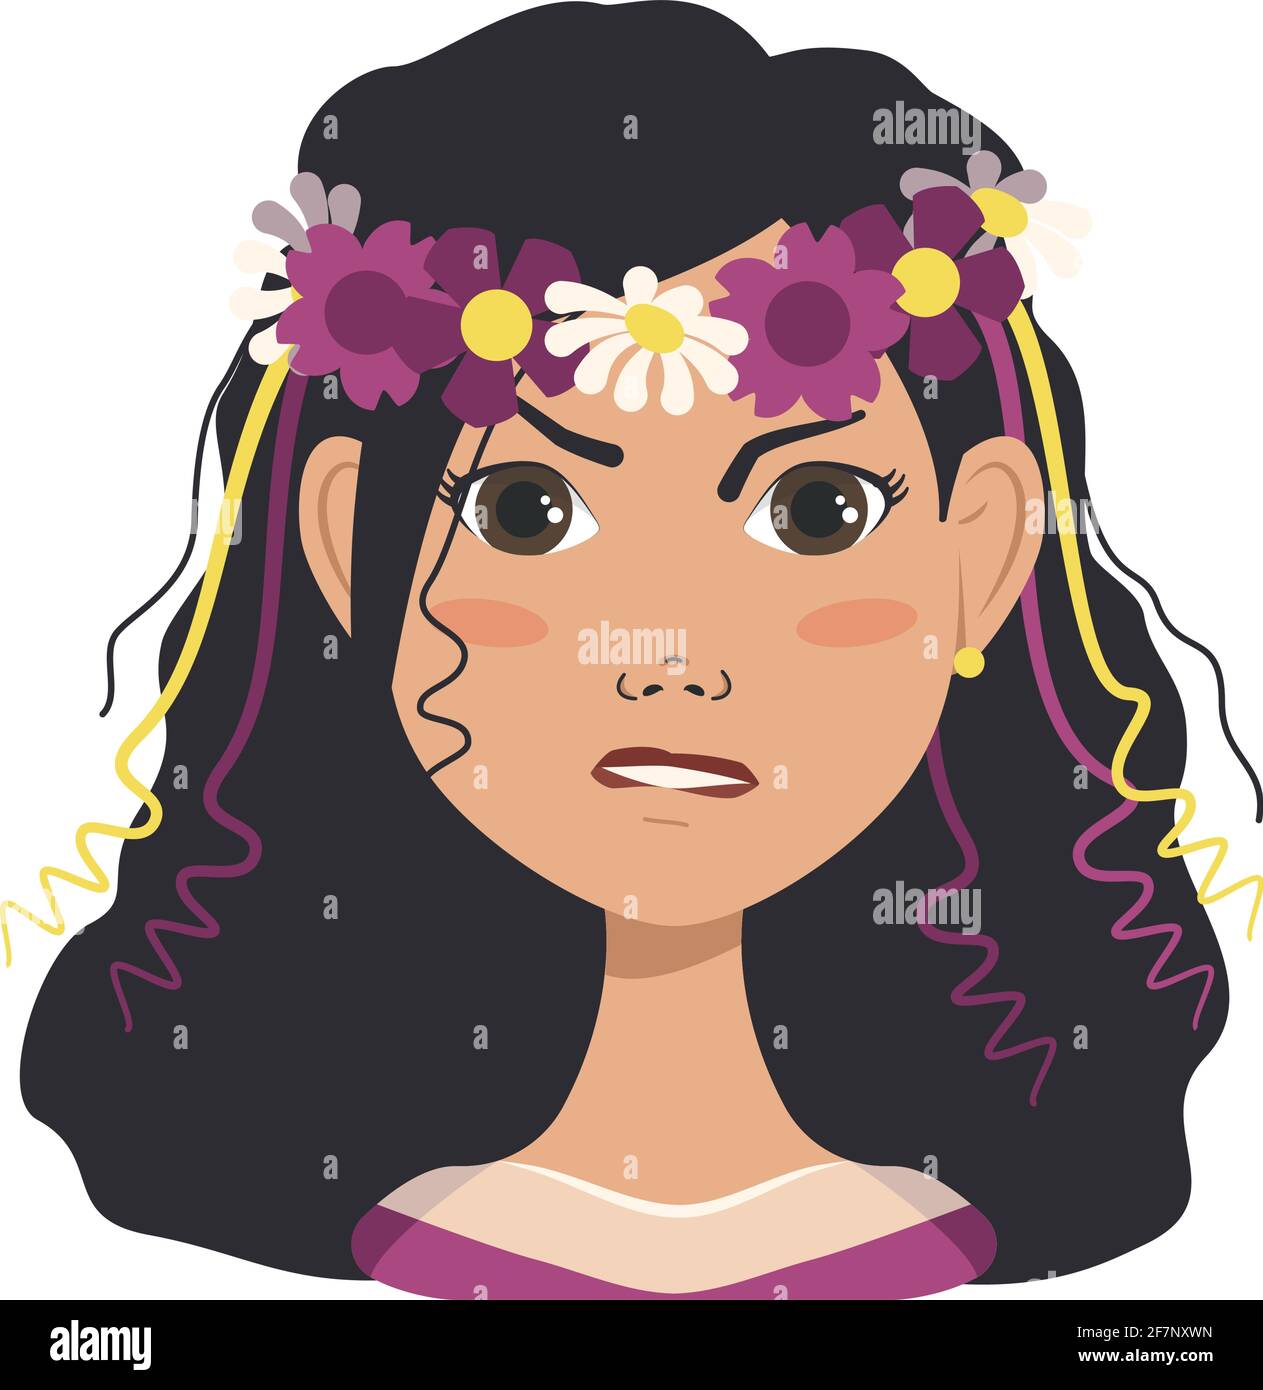 Femme avatars avec des émotions. Fille avec fleurs de printemps ou d'été et une couronne en cheveux noirs Illustration de Vecteur